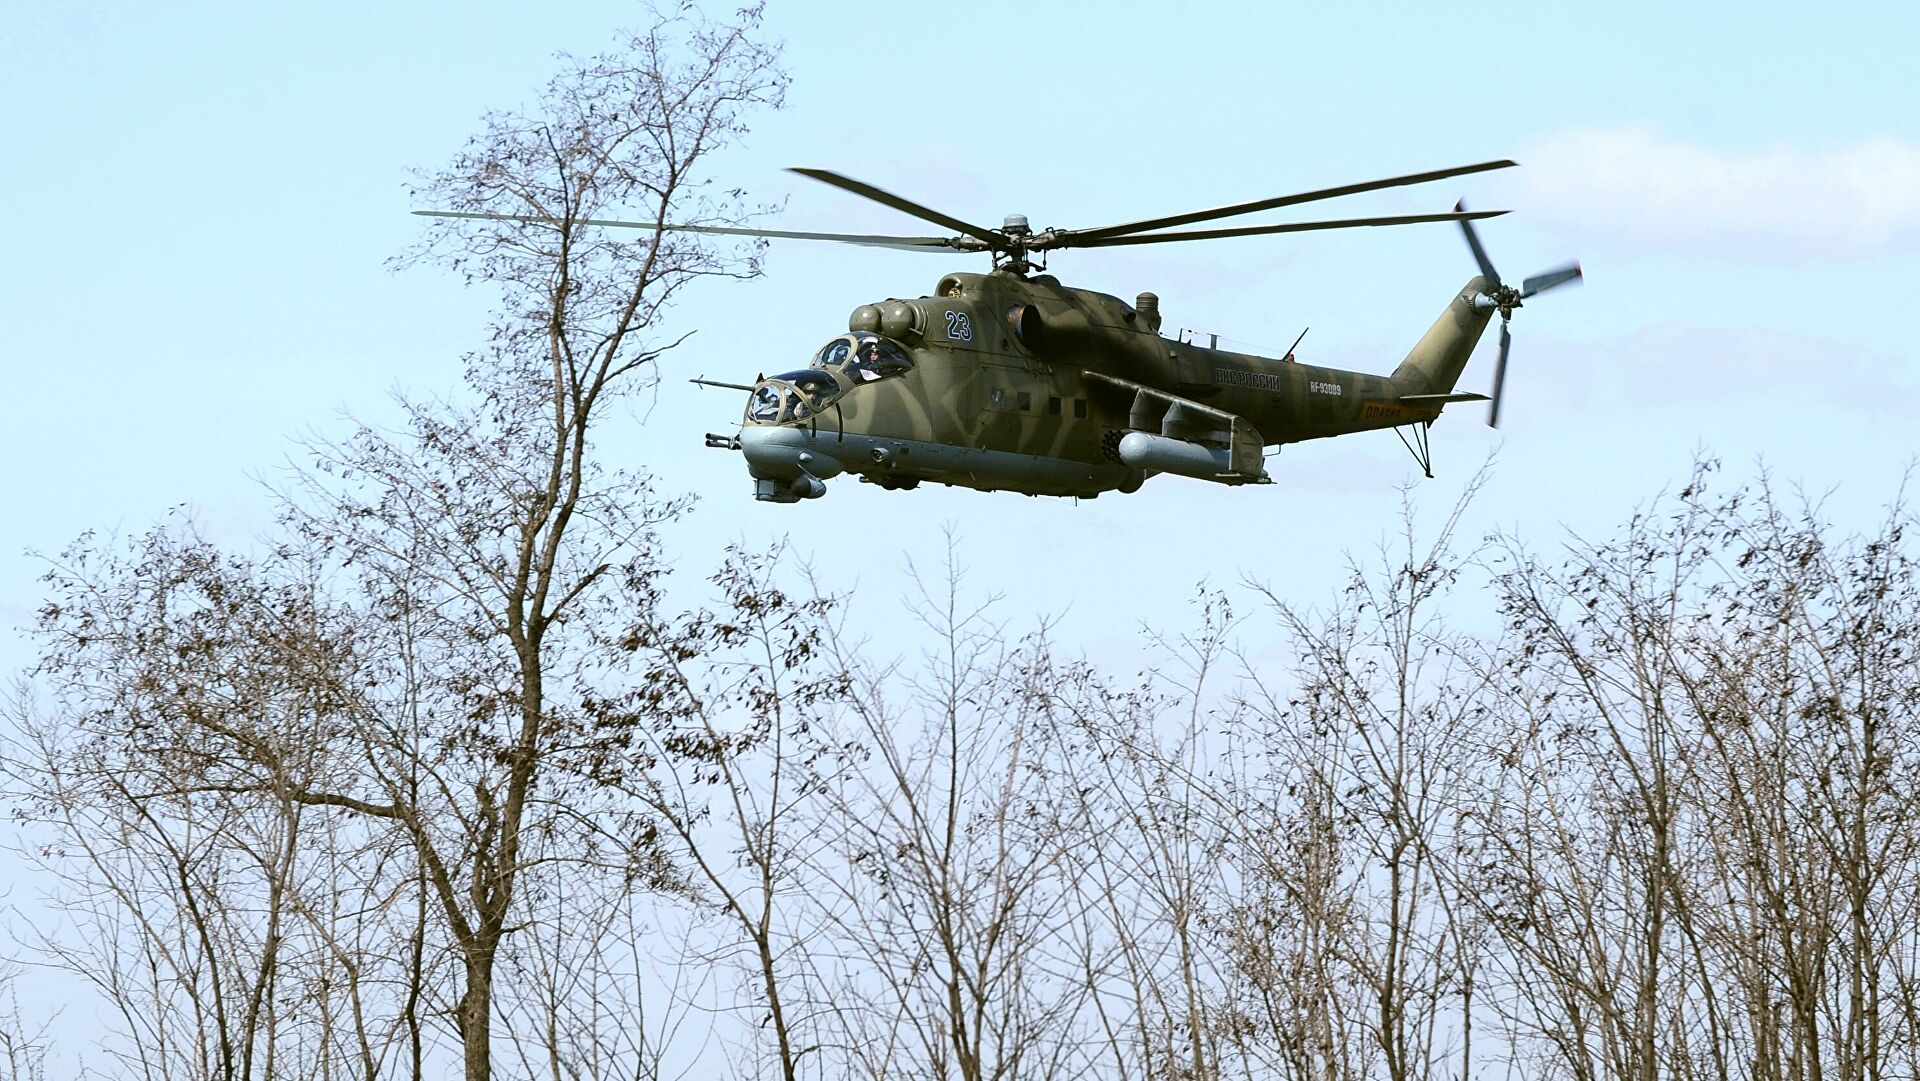 TƏCİLİ XƏBƏR: Müdafiə nazirliyinin əməkdaşları helikopterlə daşınır – İRƏVANDA XAOS - VİDEO